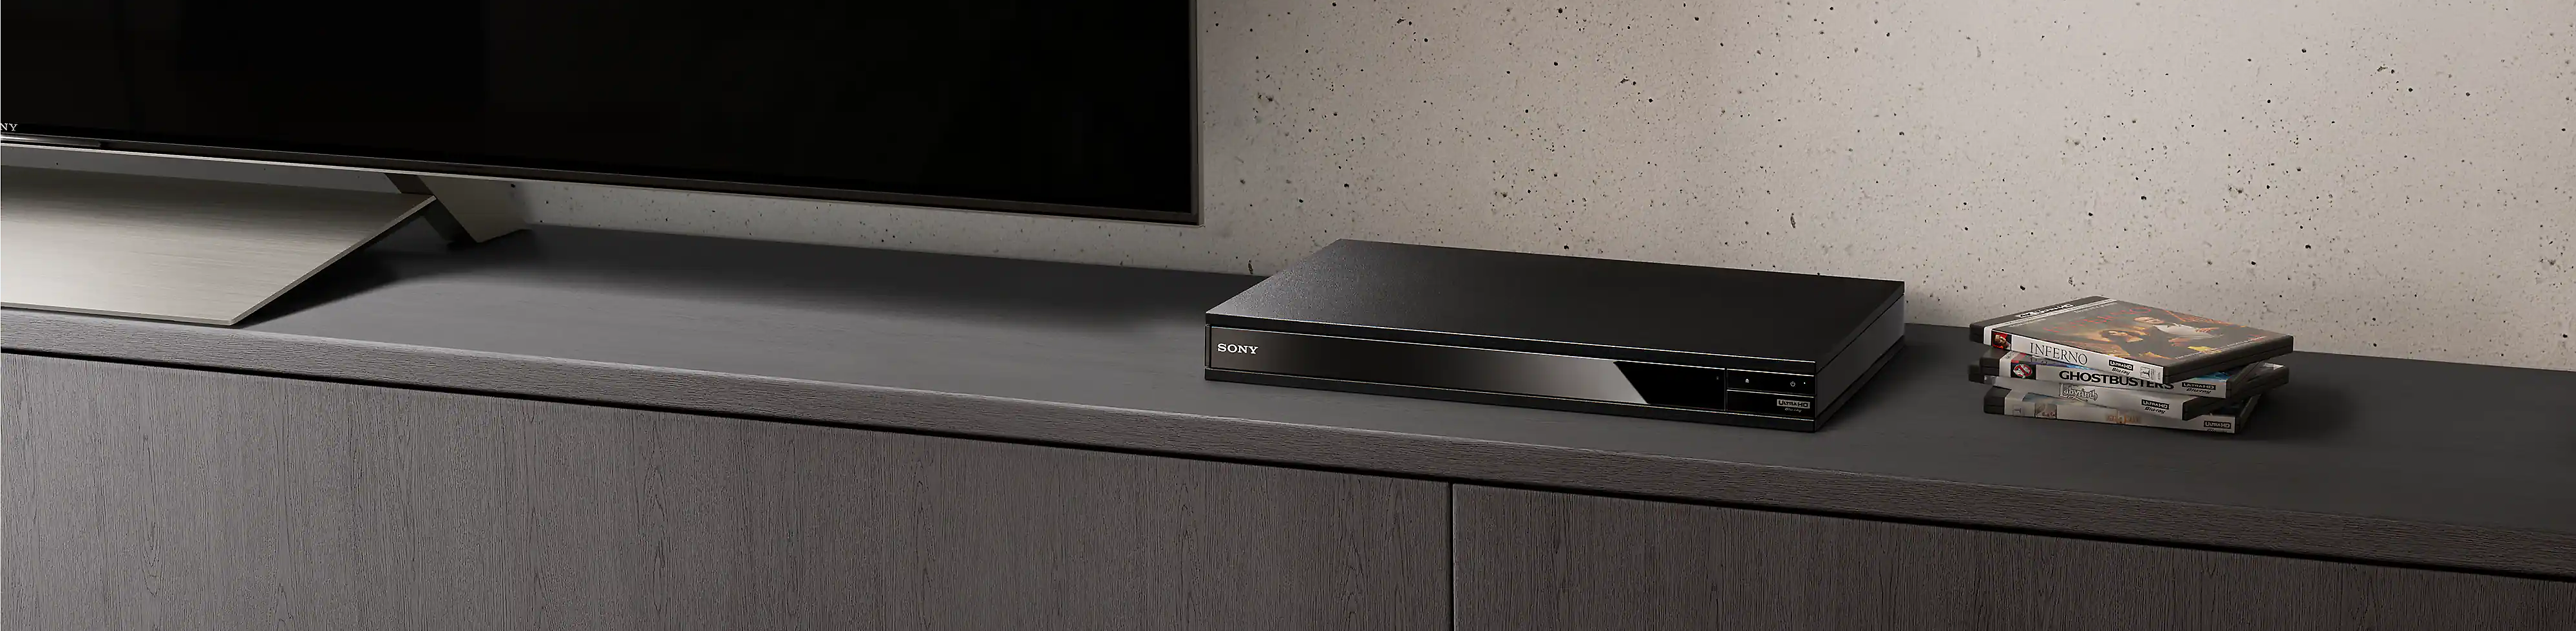 En svart Blu-ray Disc-spelare syns mellan en hög med Blu-ray-skivor och en svart tv.